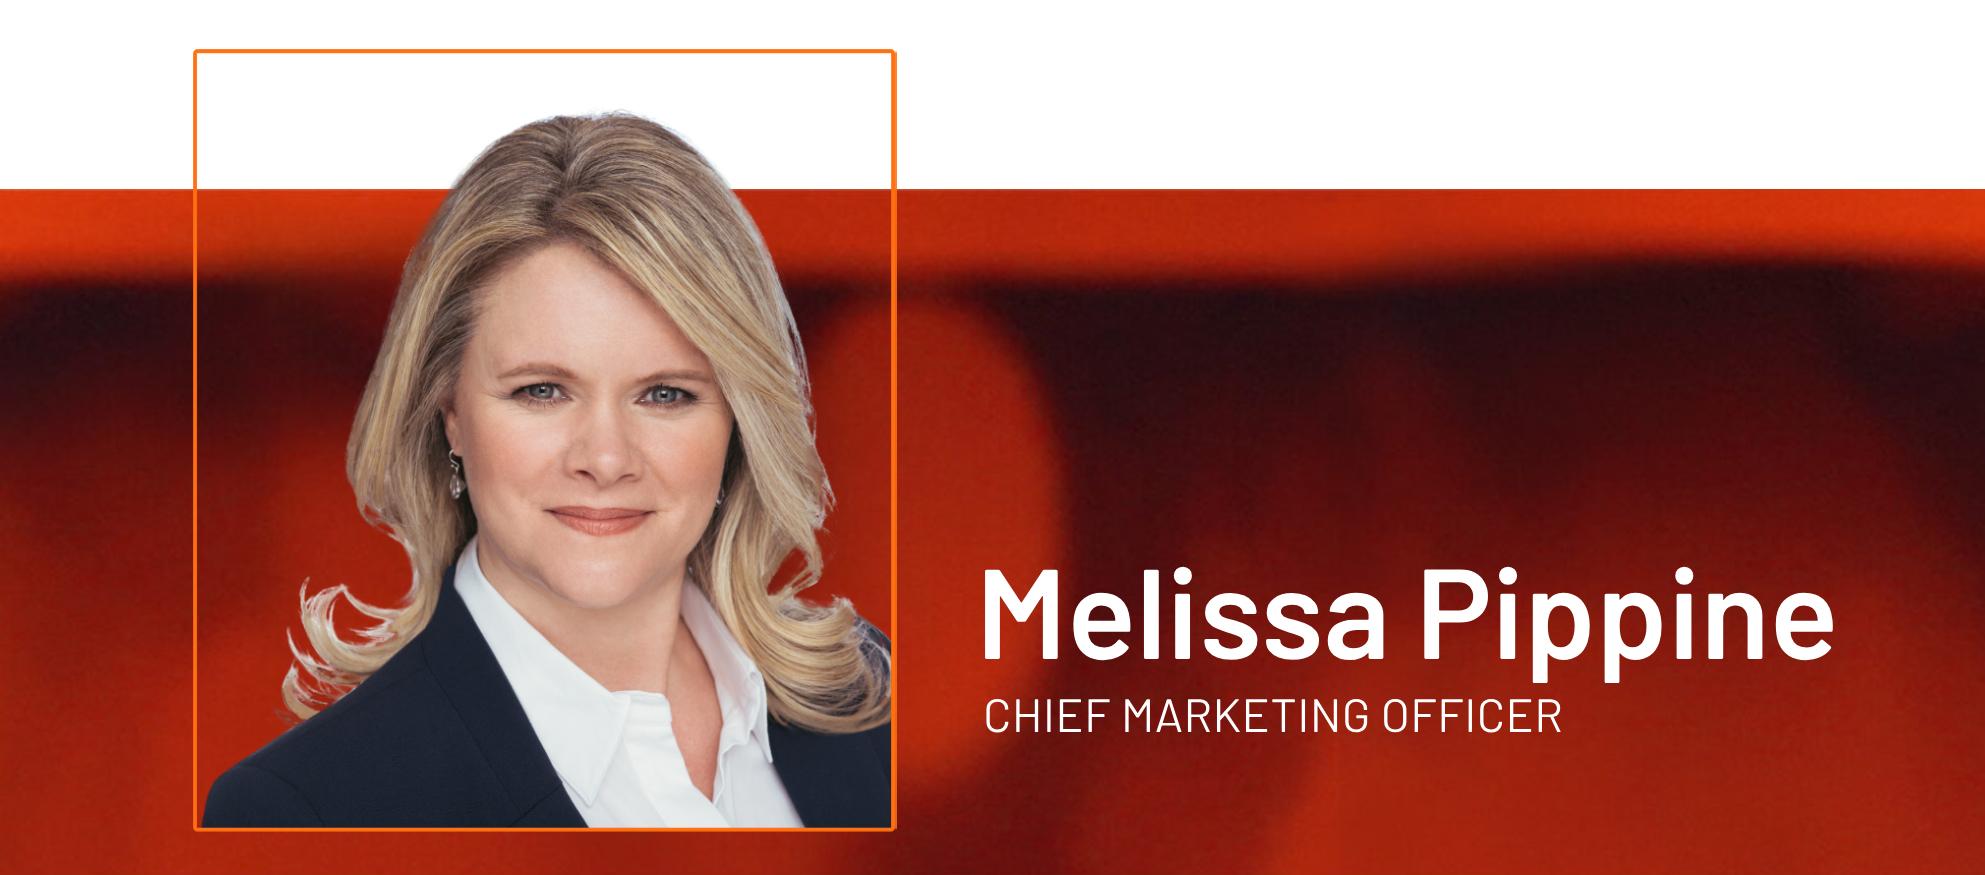 Melissa Pippine, Chief Marketing Officer